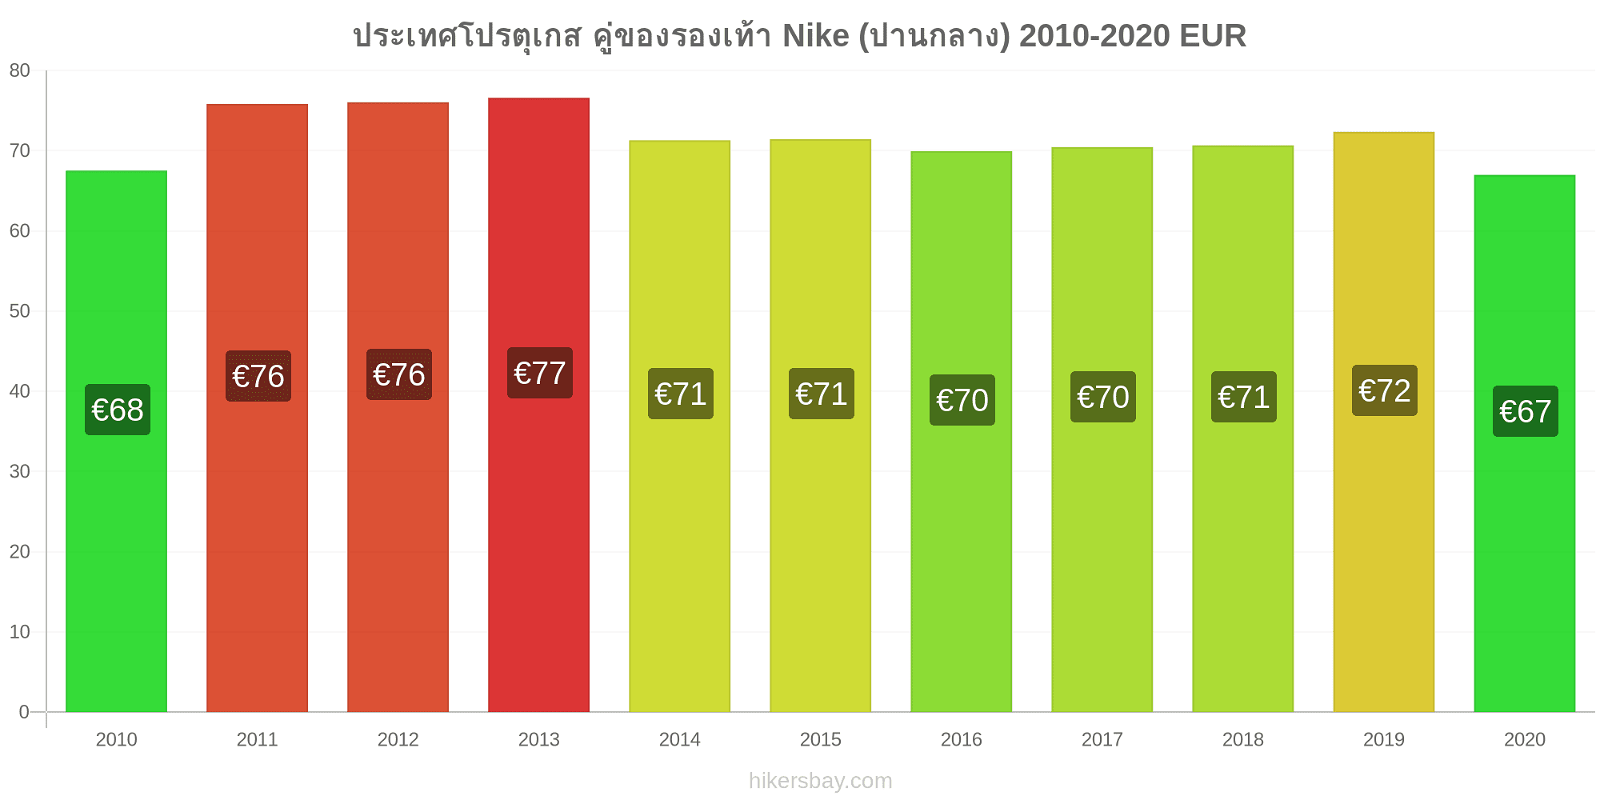 ประเทศโปรตุเกส การเปลี่ยนแปลงราคา คู่ของรองเท้า Nike (ปานกลาง) hikersbay.com